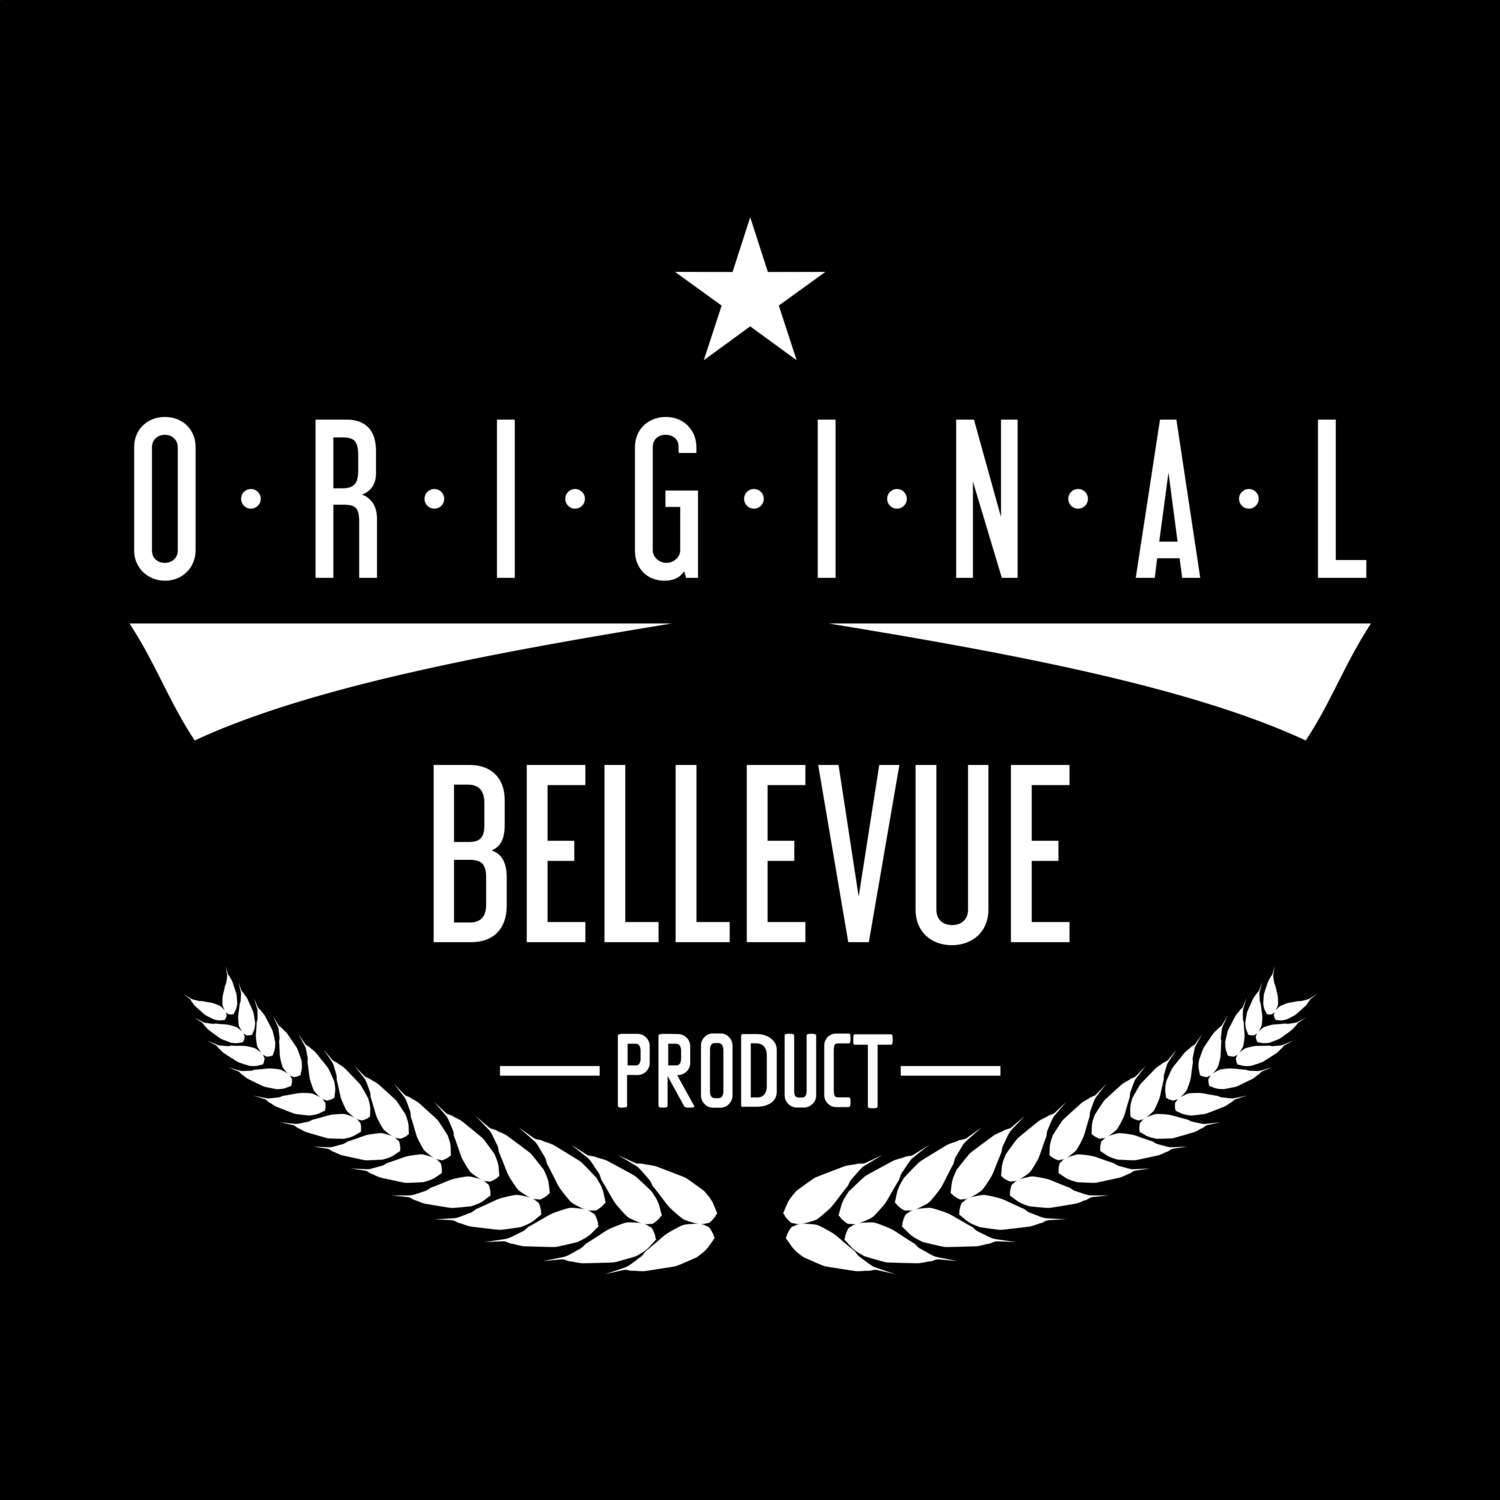 Bellevue T-Shirt »Original Product«